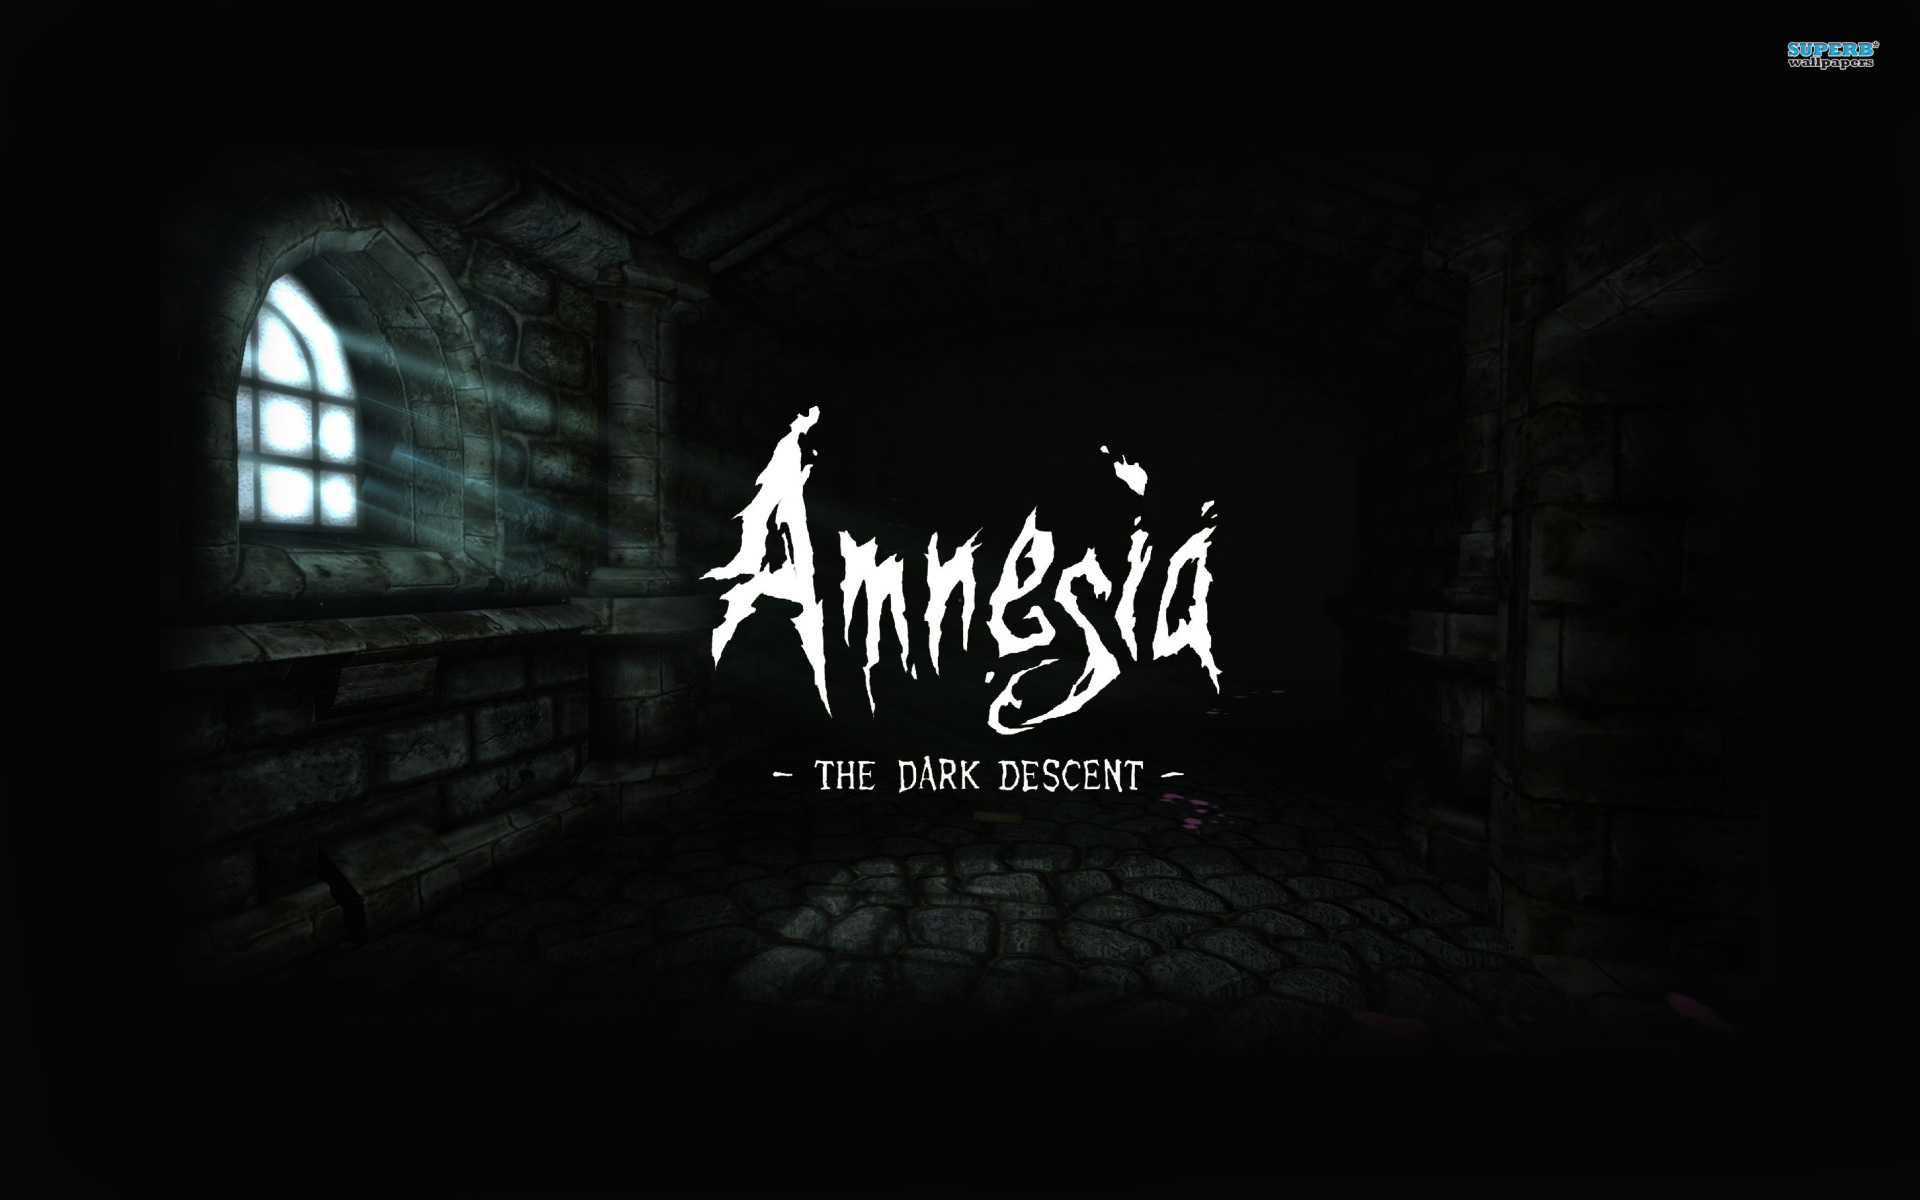 Amnesia The Dark Descent Image HD Wallpaper And